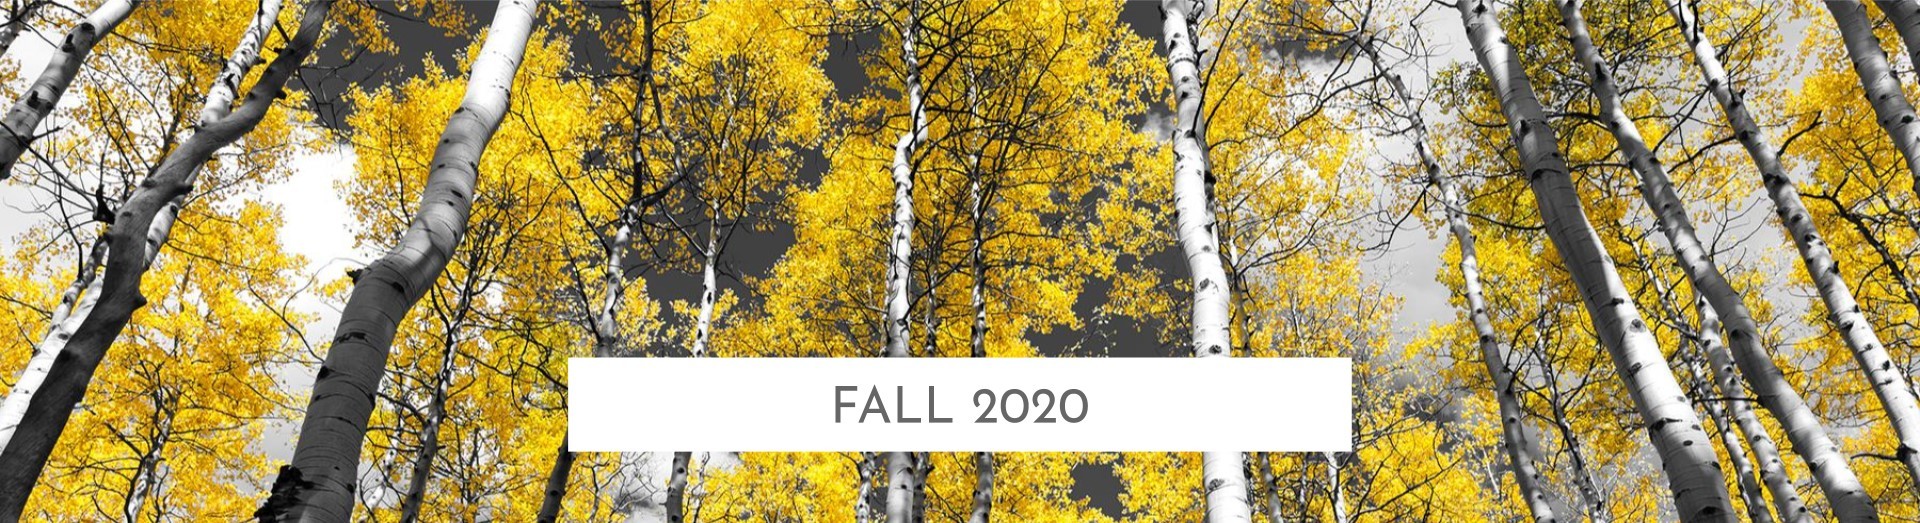 fall 2020 header